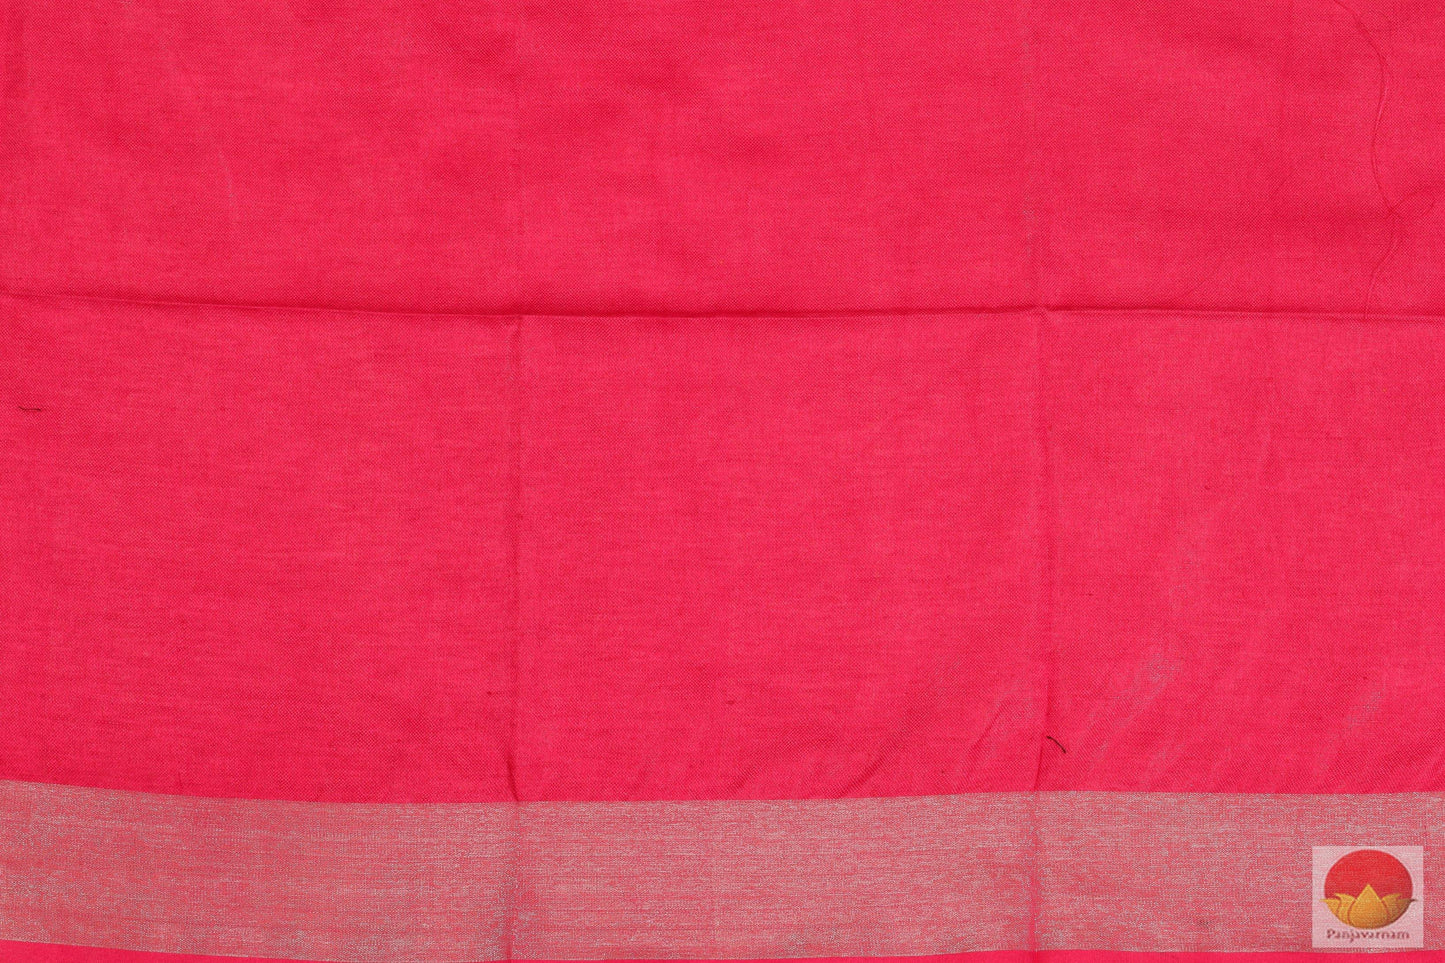 Handwoven Linen Saree - Silver Zari - PL - 165 - Linen Sari - Panjavarnam